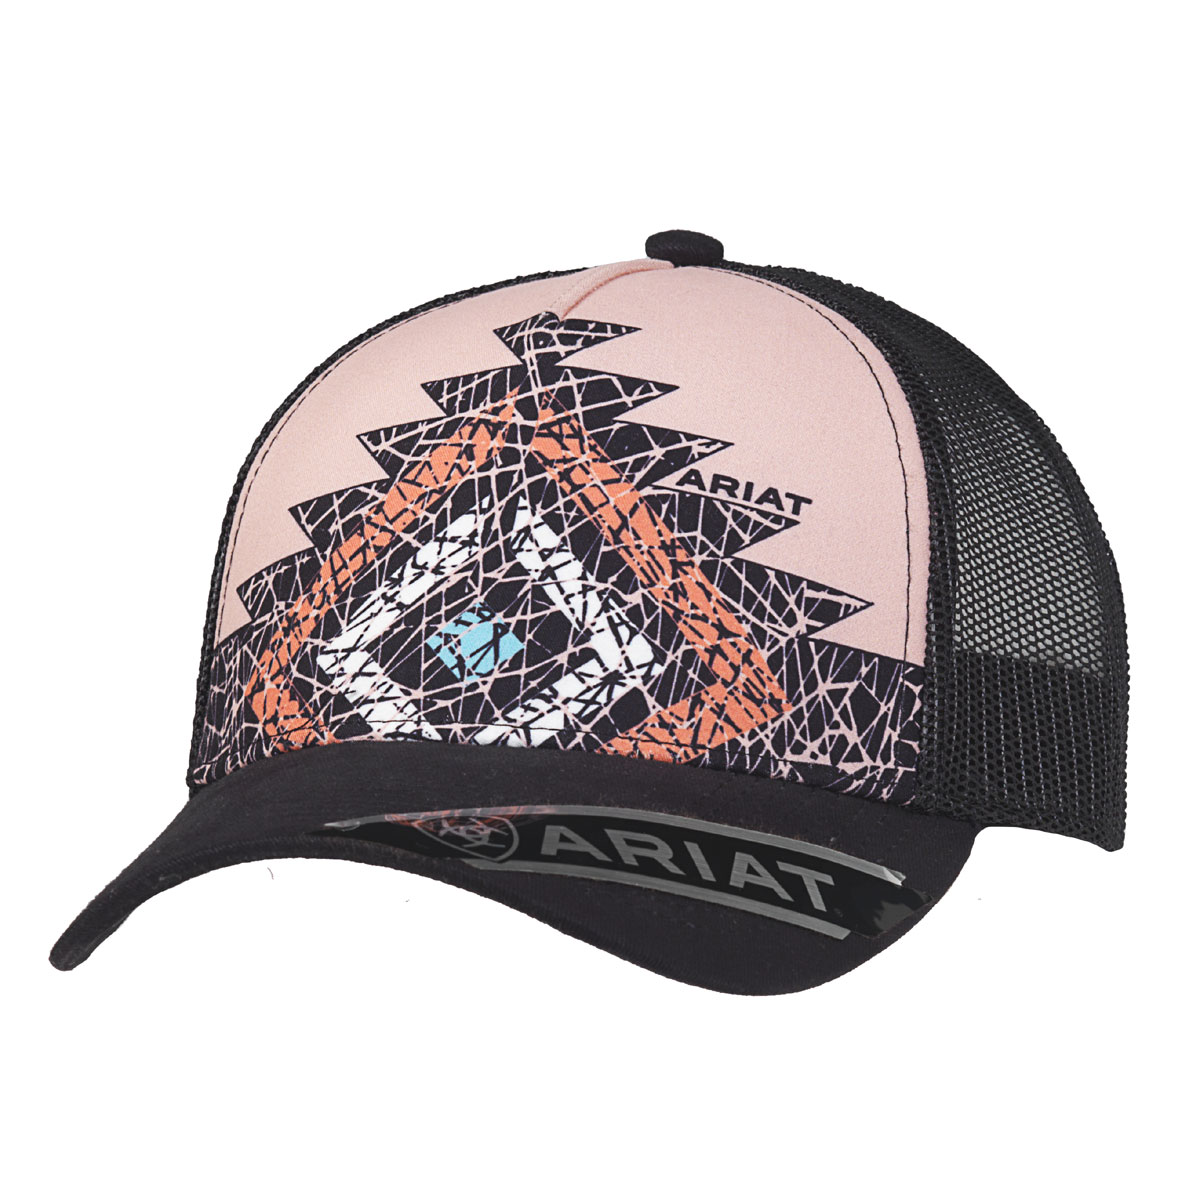 Ariat Women's Cap - Aztec Diamond Pink